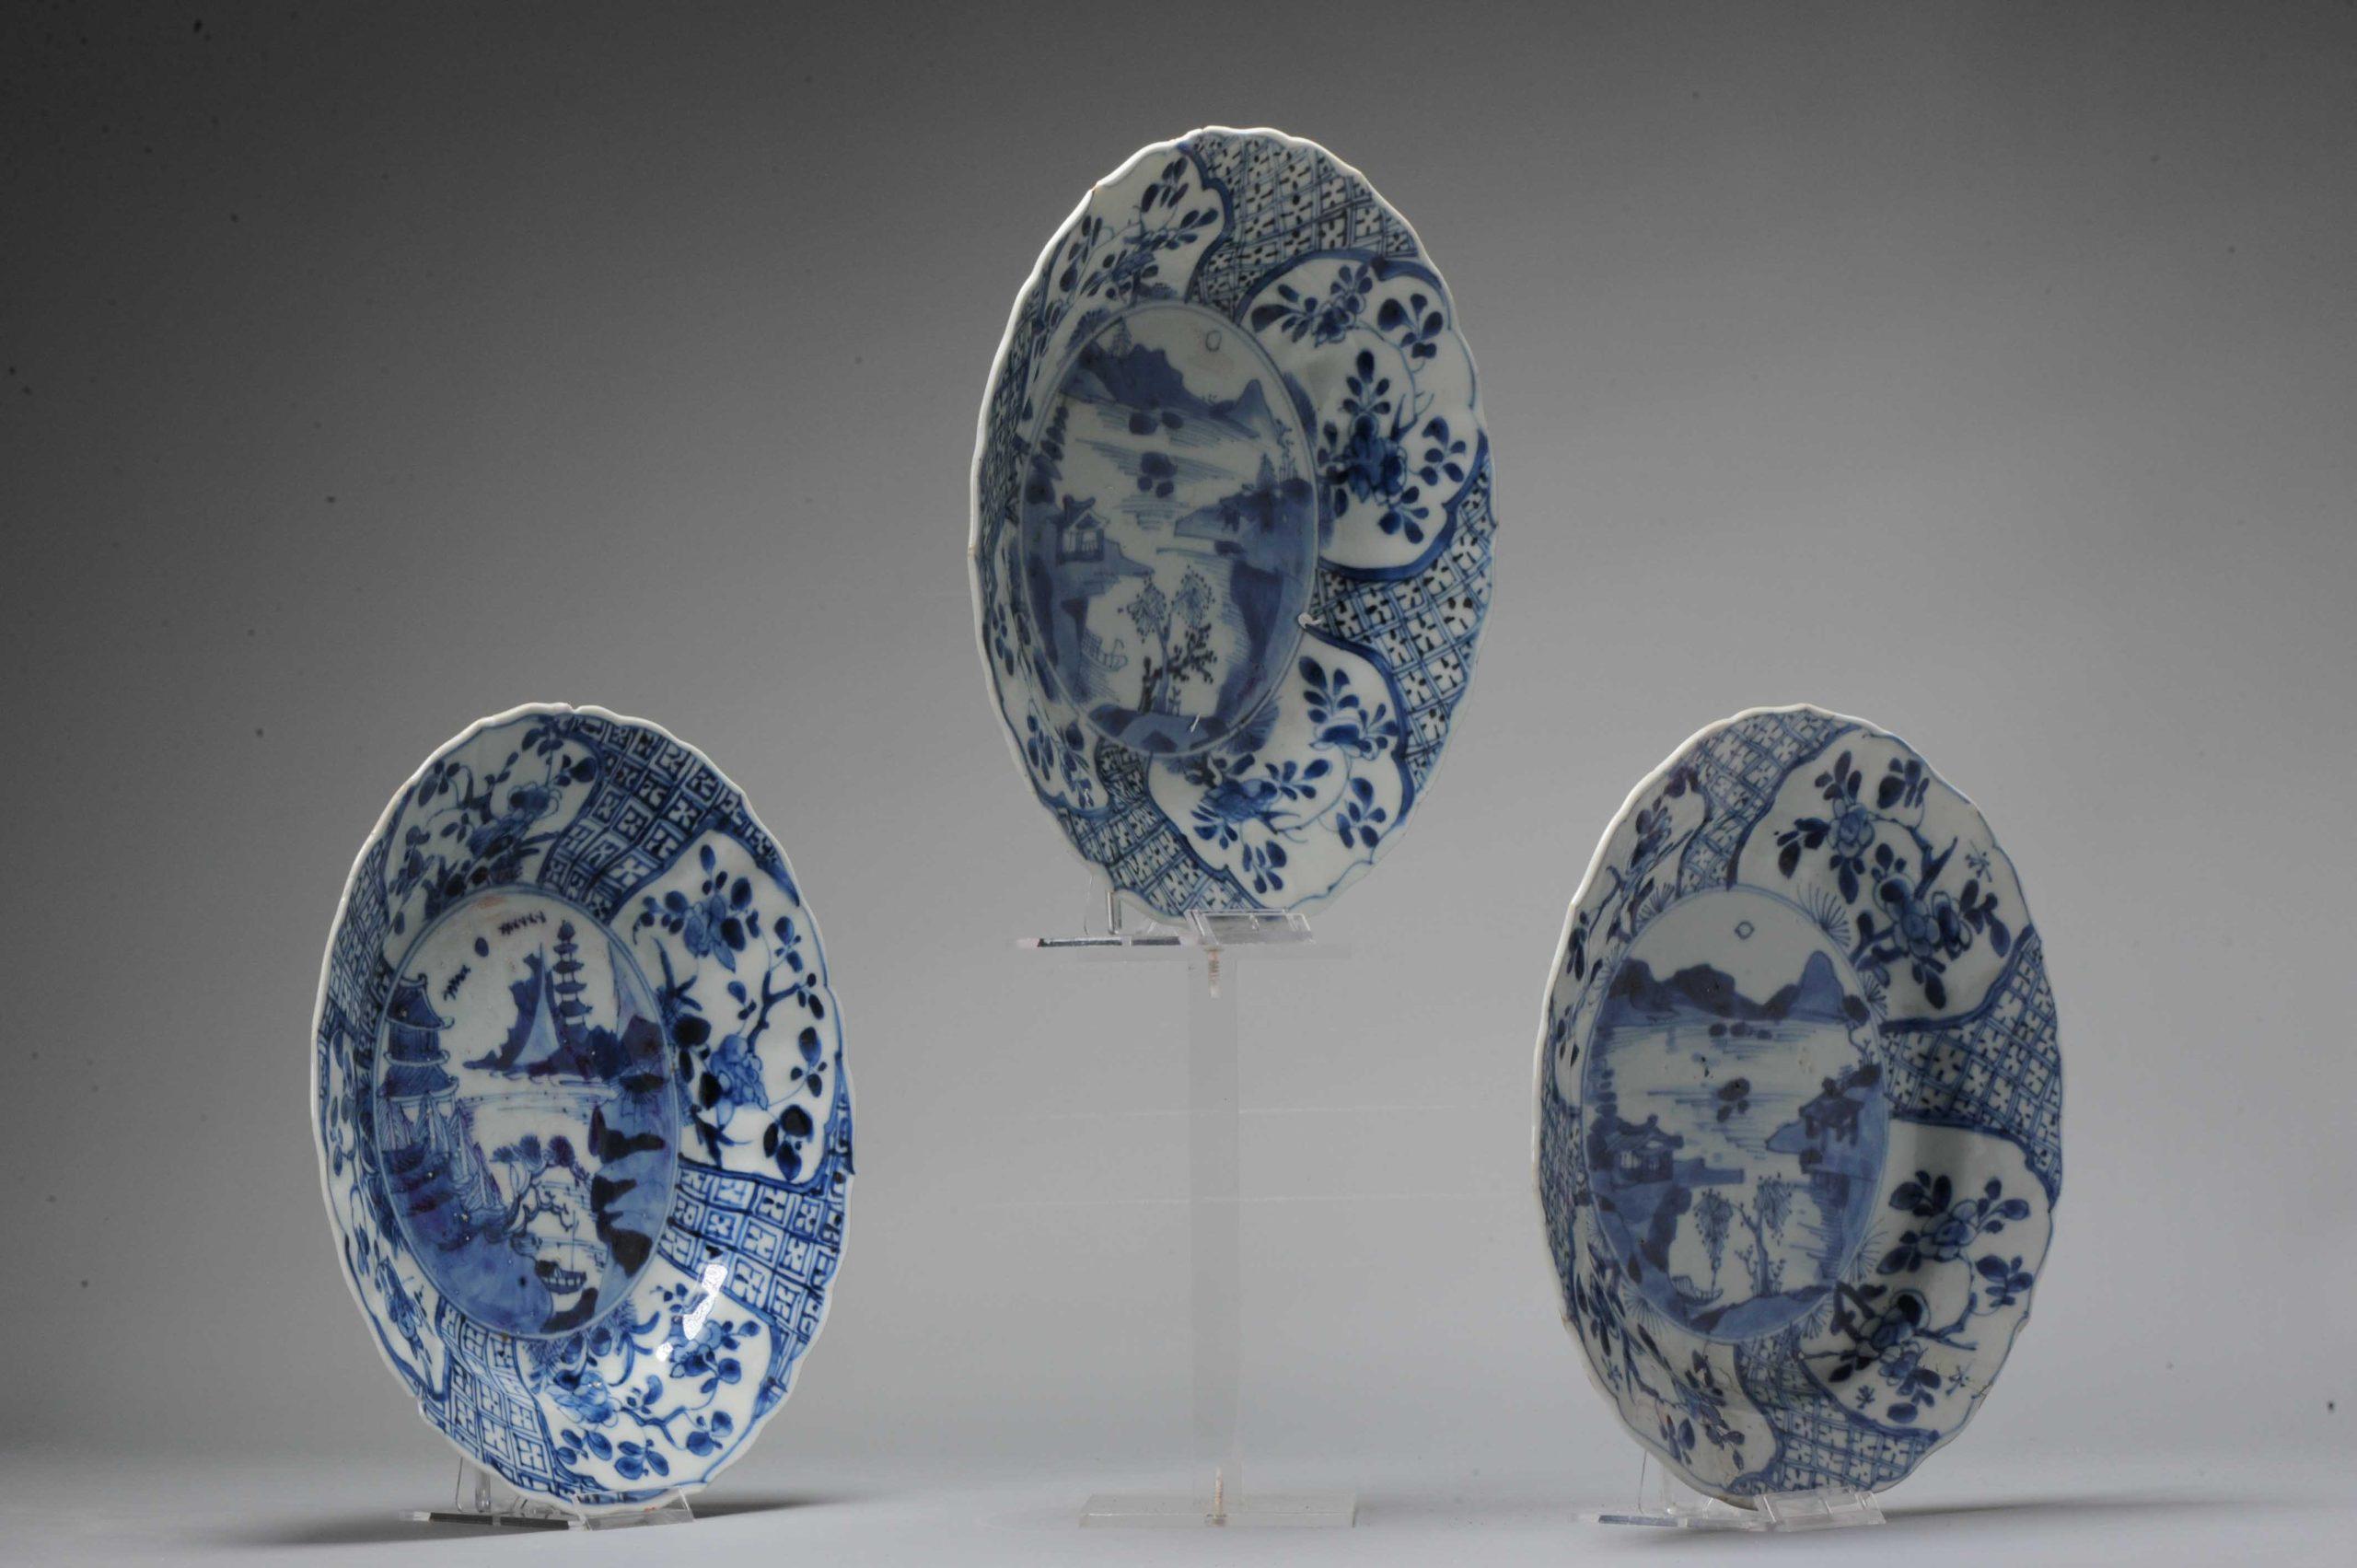 Un ensemble de grands plats Kangxi en bleu de cobalt de très grande qualité, tous avec des scènes de paysage similaires et moulés dans une belle forme. Ces plats datent des premières années du règne de Kangxi, au XVIIe siècle. Tous portent une belle